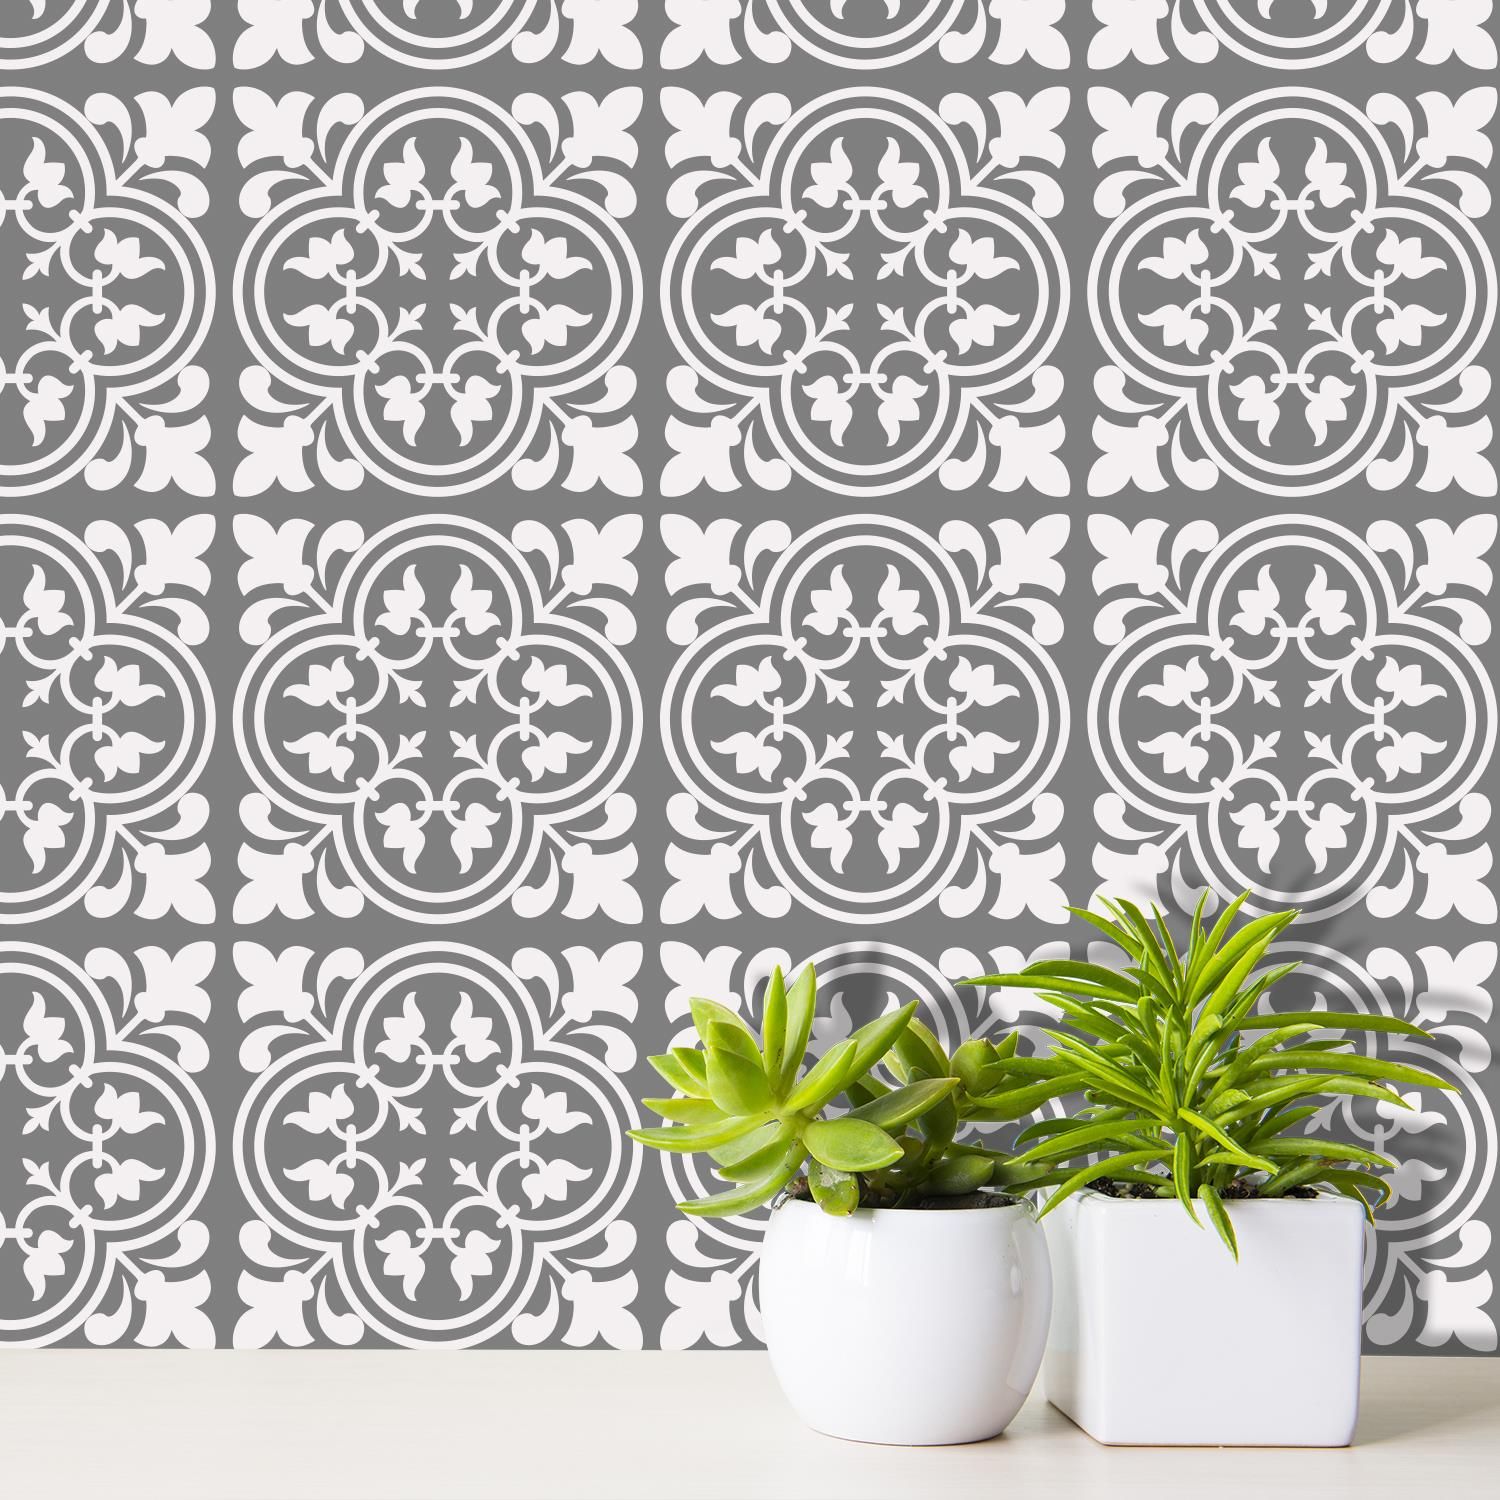 Cement Antique Floral Tulip Pattern Tiles Wall Stickers Set 2-15 x 15 cm 24pcs 